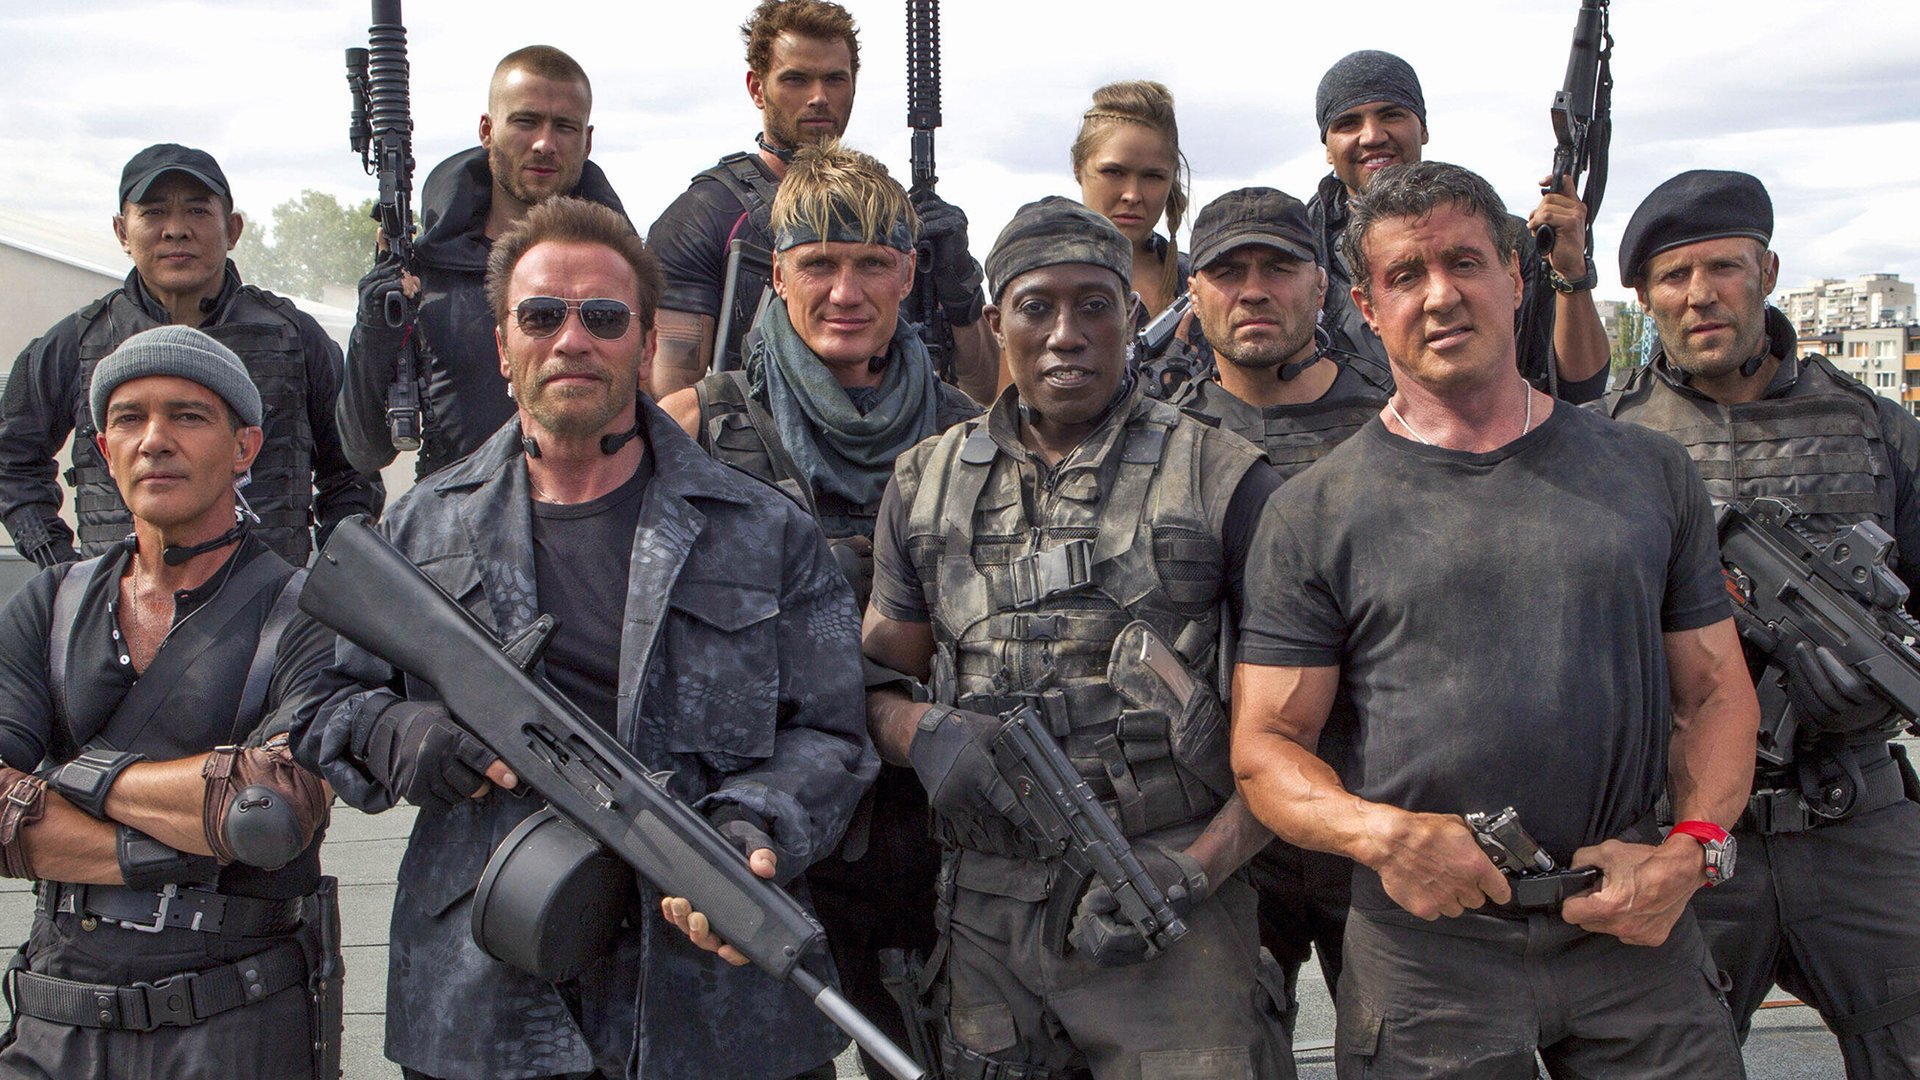 #Staffelübergabe bei „The Expendables 4“: Sylvester Stallone übergibt die Führung im neuen Film